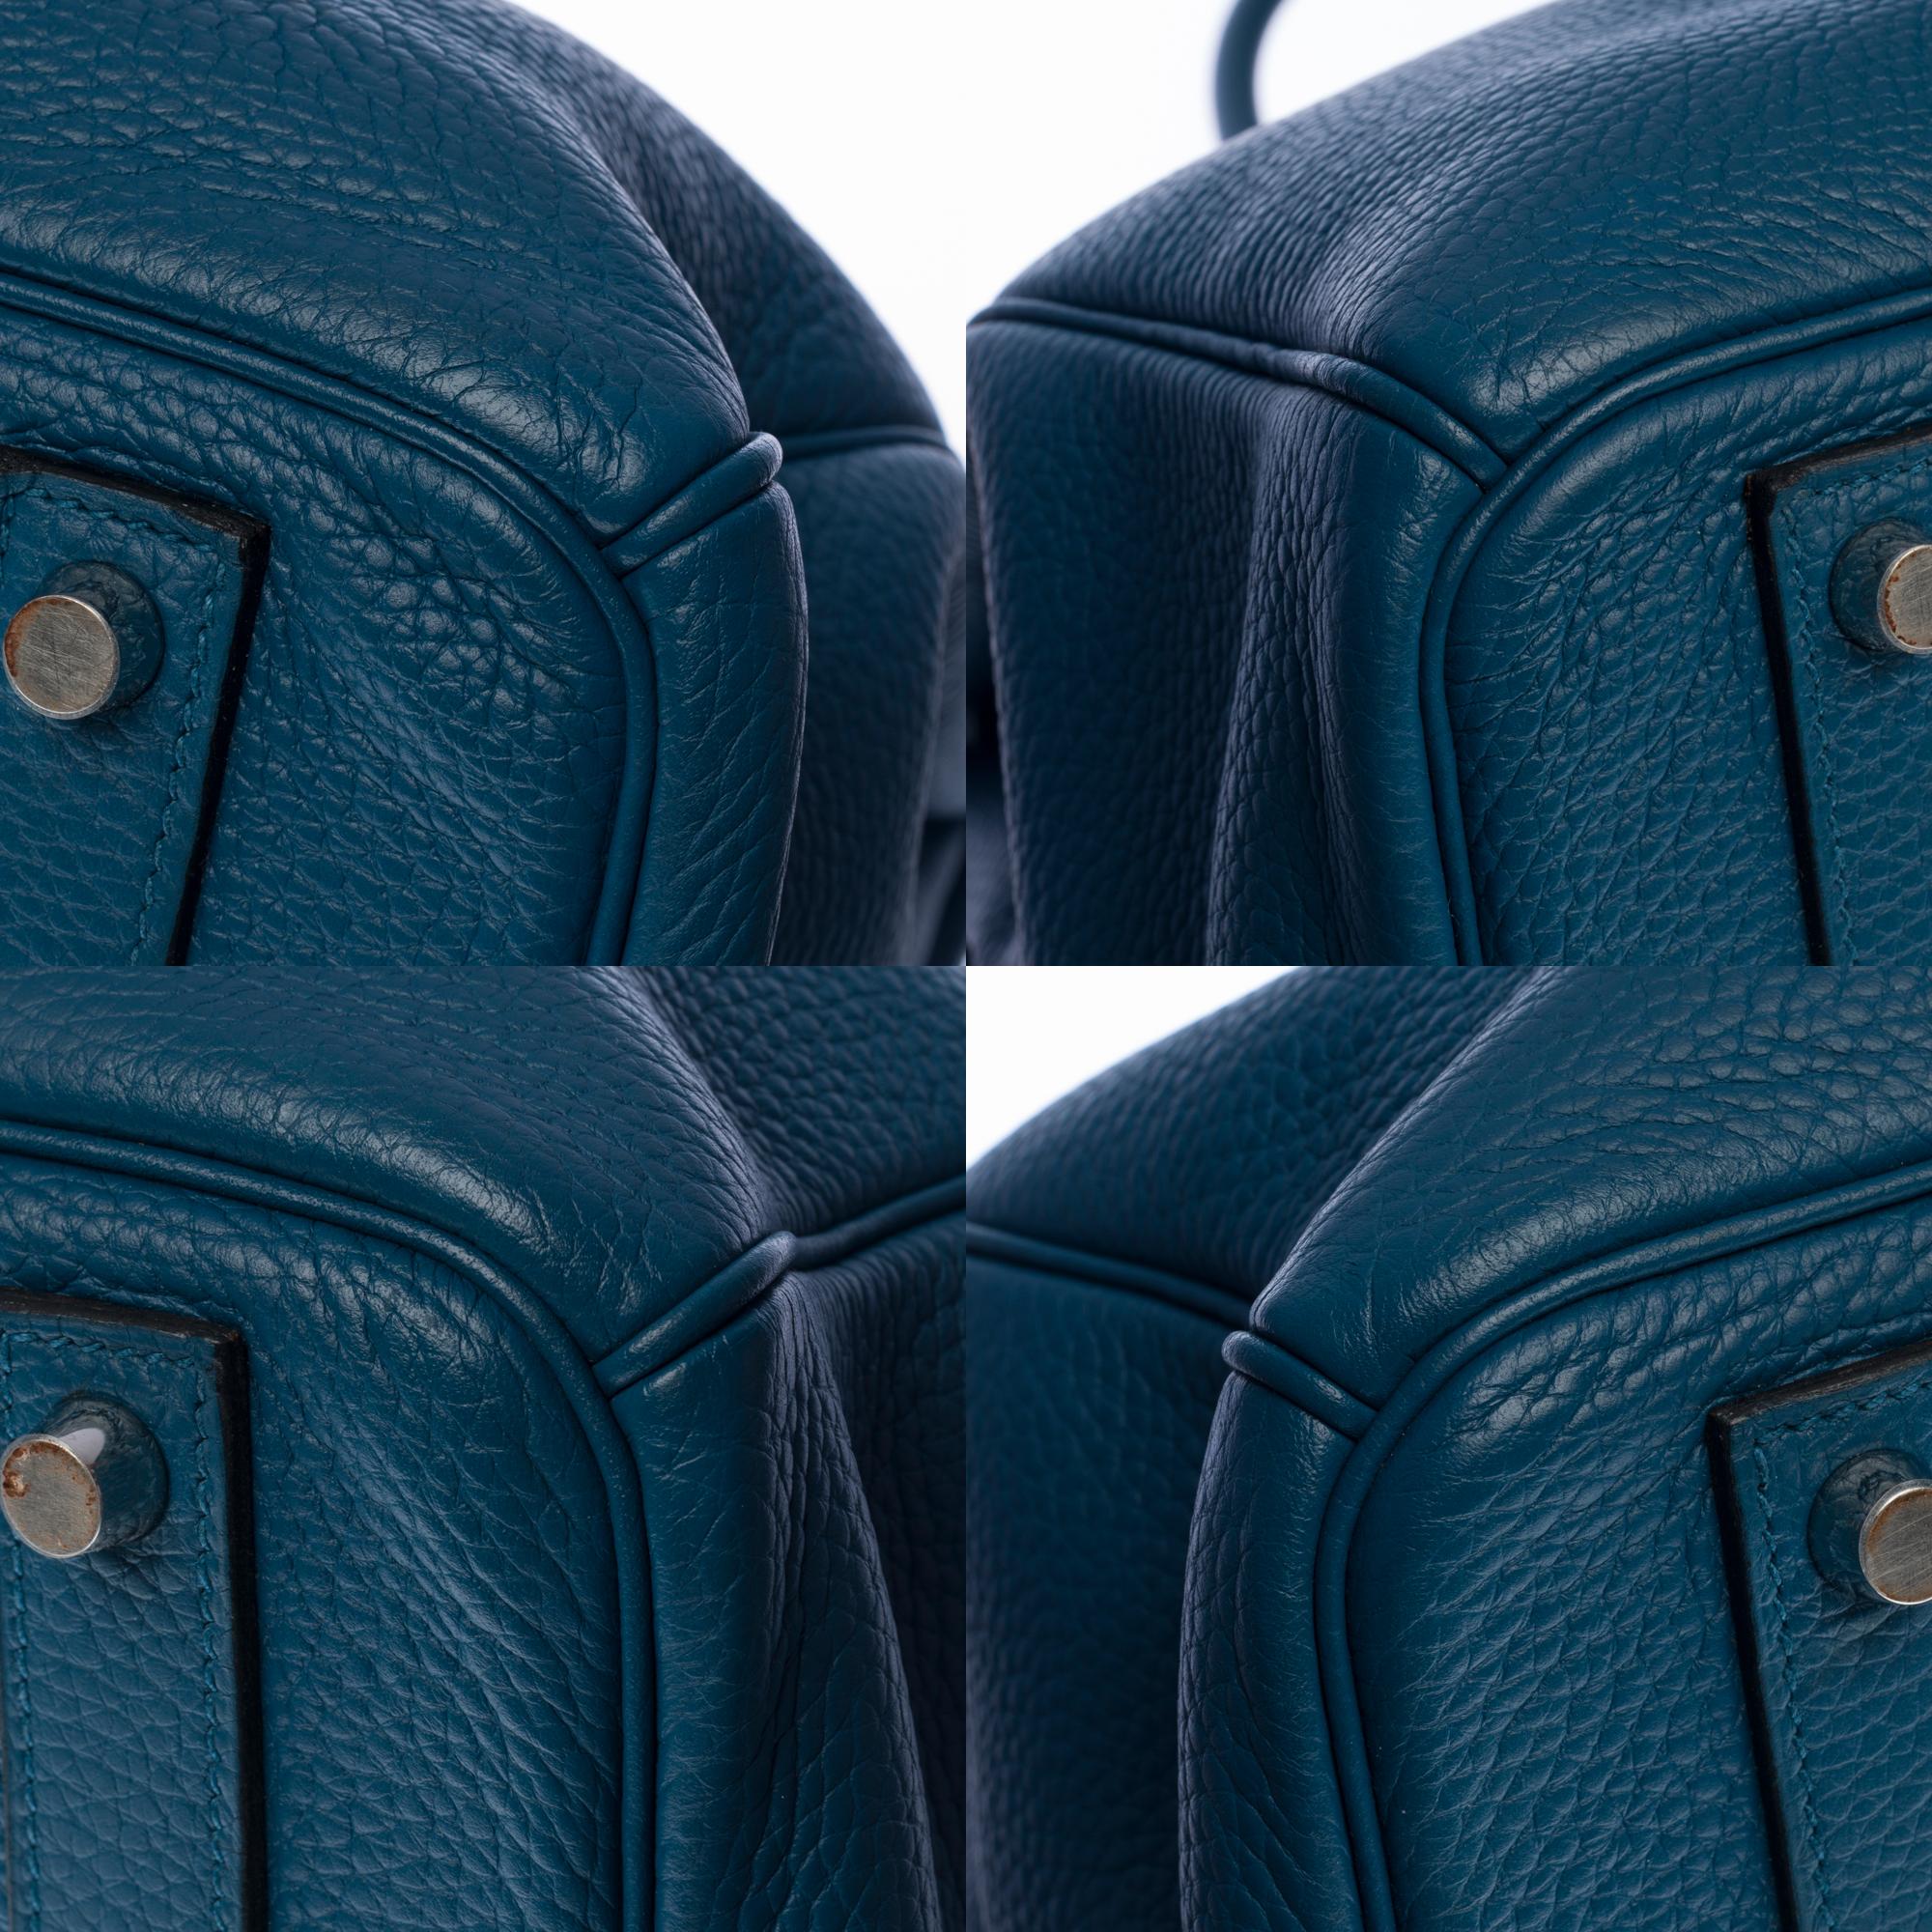 Stunning Hermes Birkin 40cm handbag in Blue Cobalt Togo leather, SHW 3